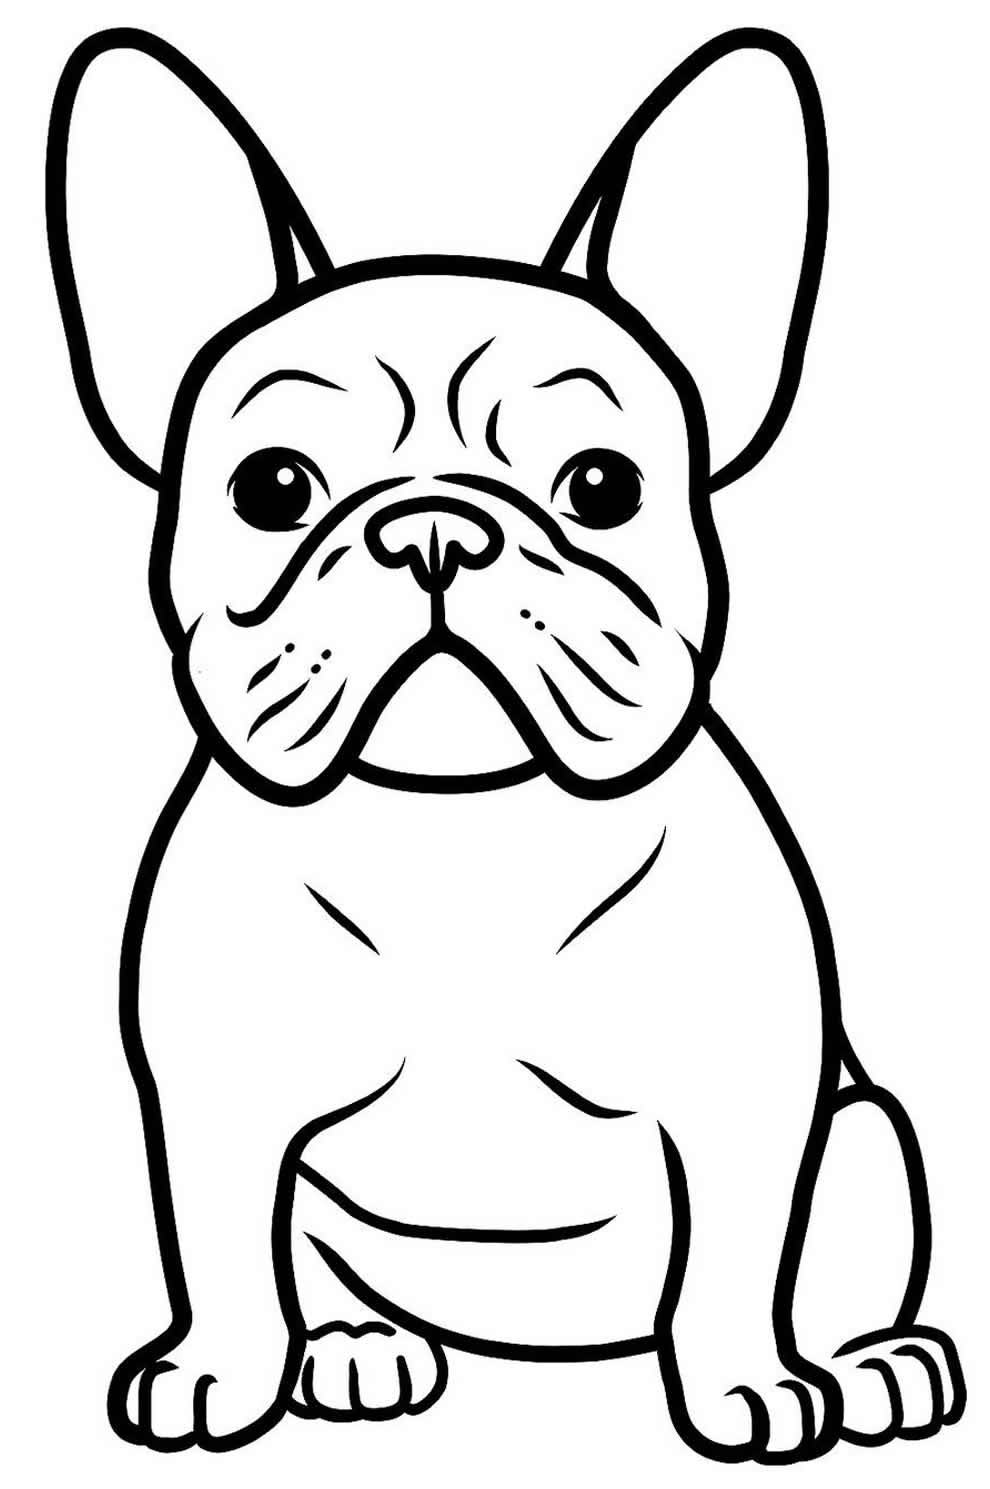 Desenho de cachorrinho para colorir